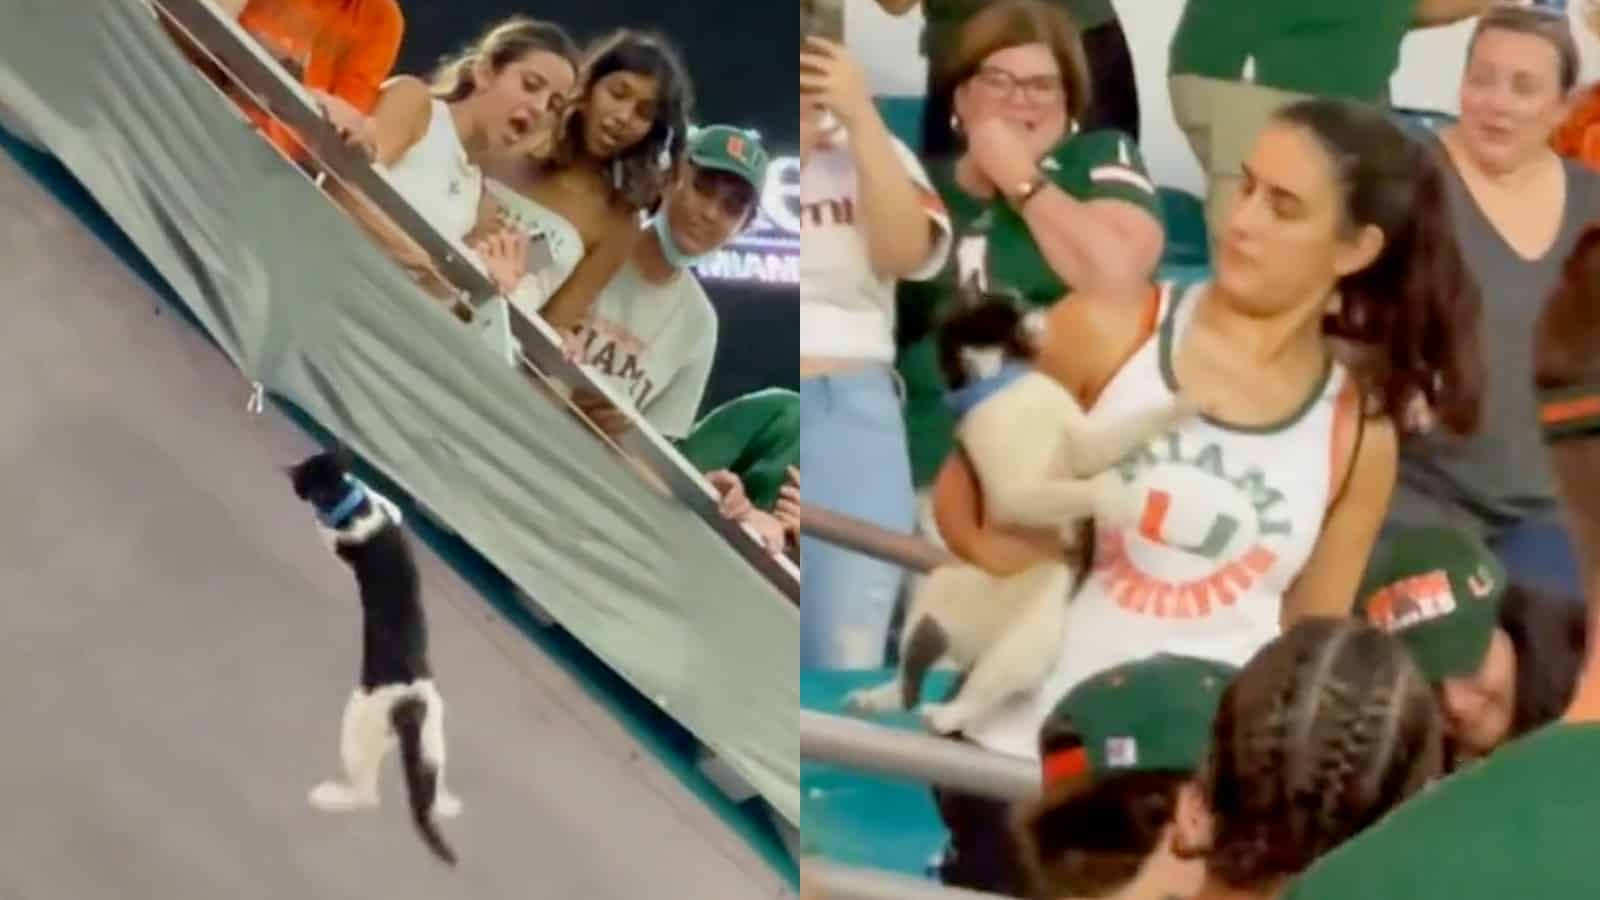 A cat falls in a stadium